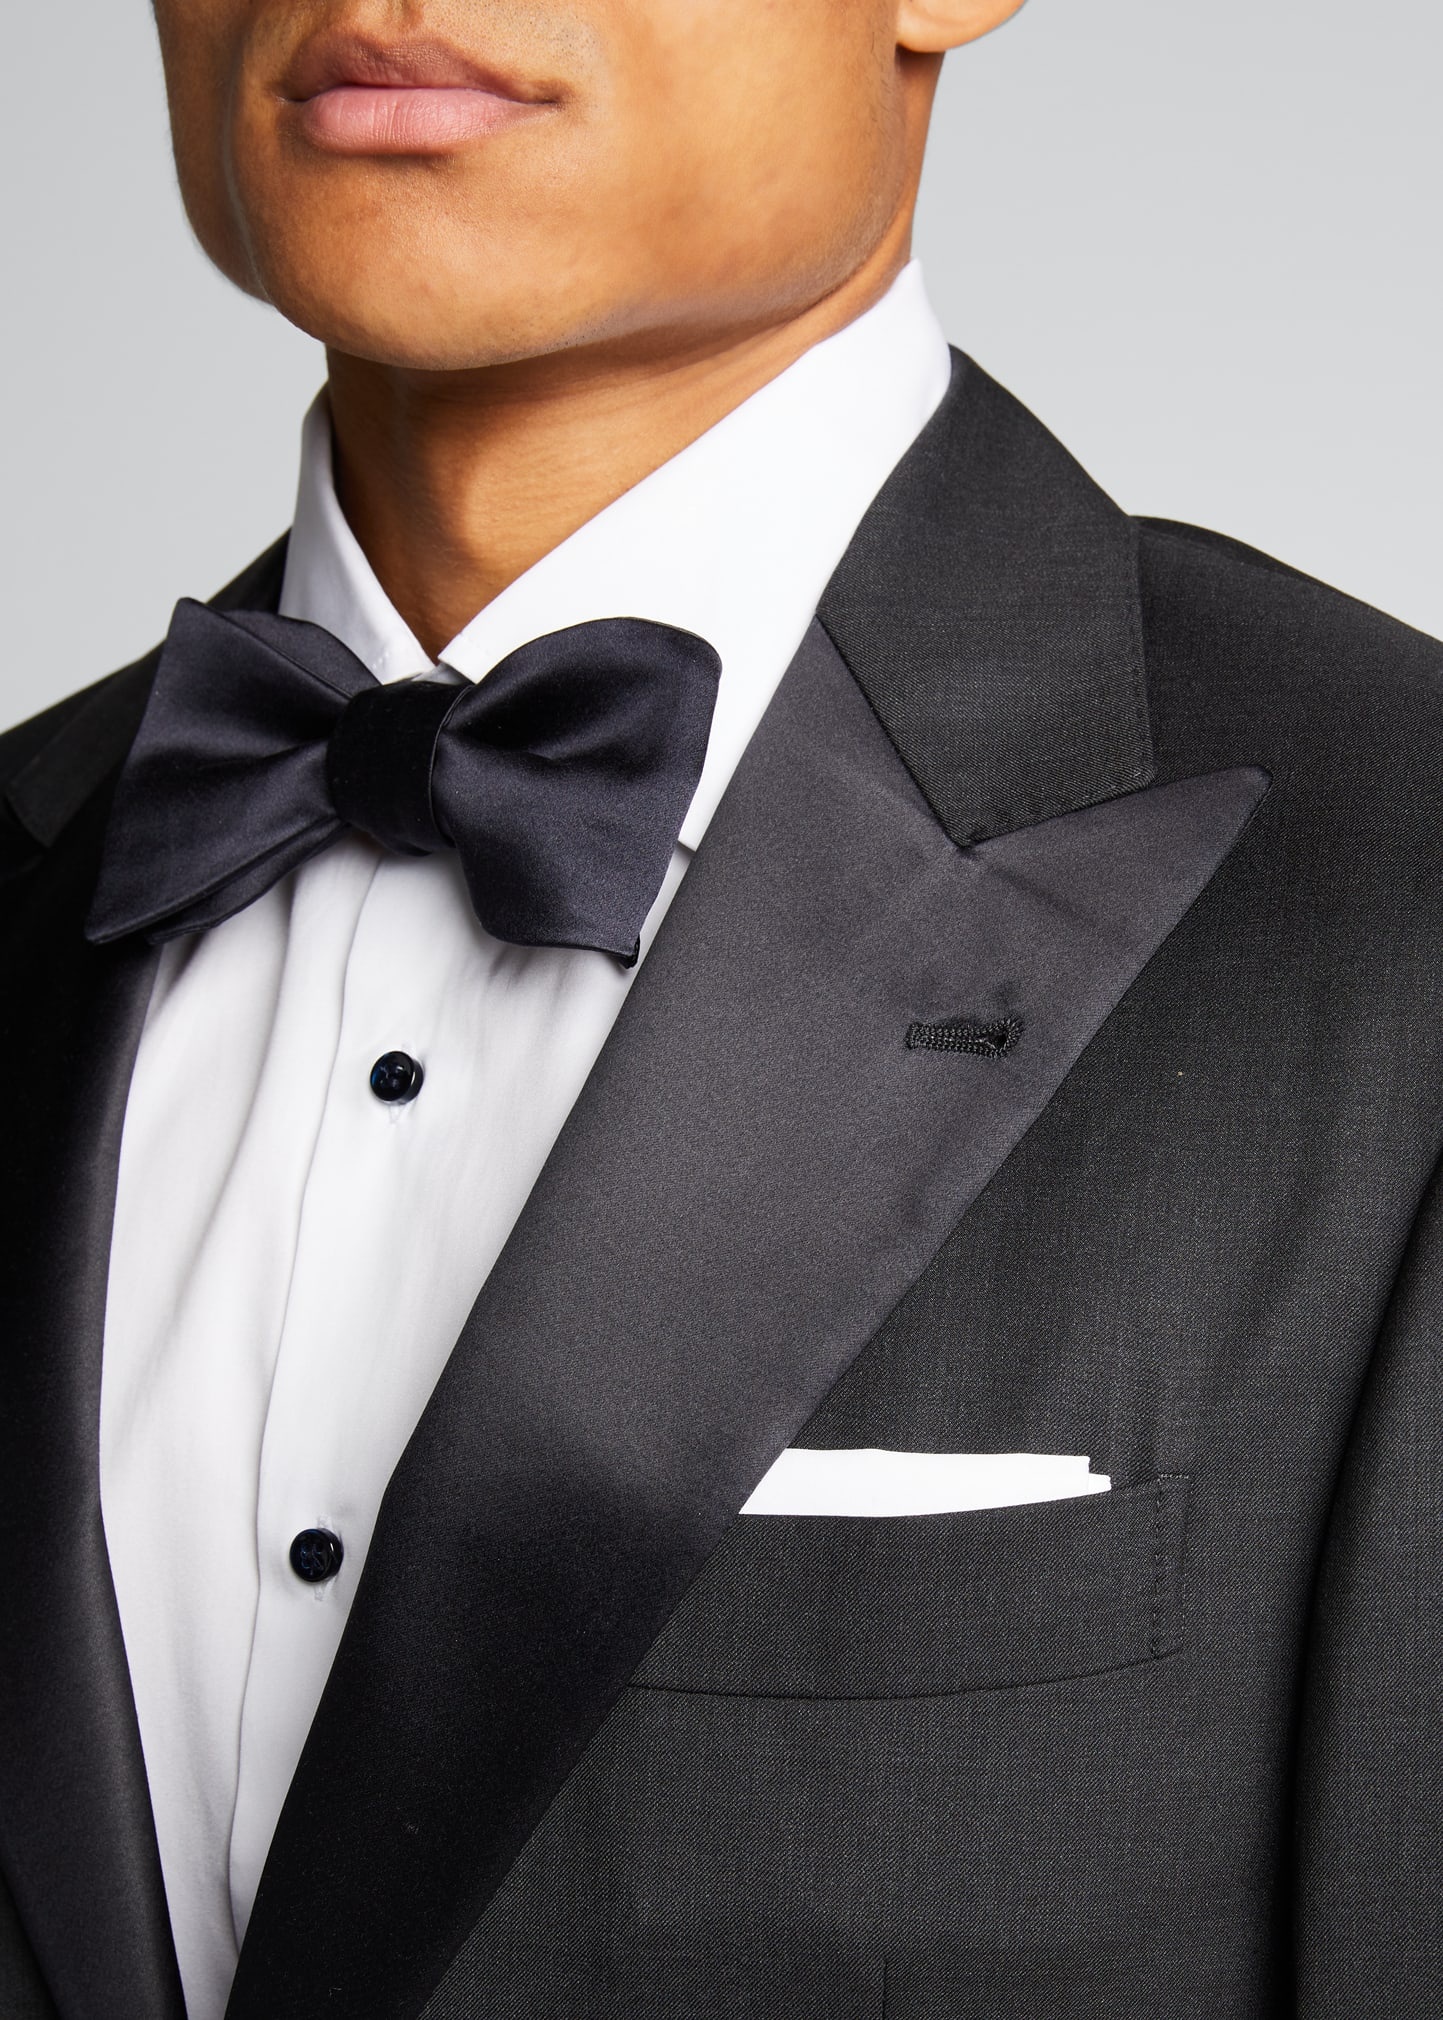 Men's Peak-Lapel Solid Tuxedo - 5